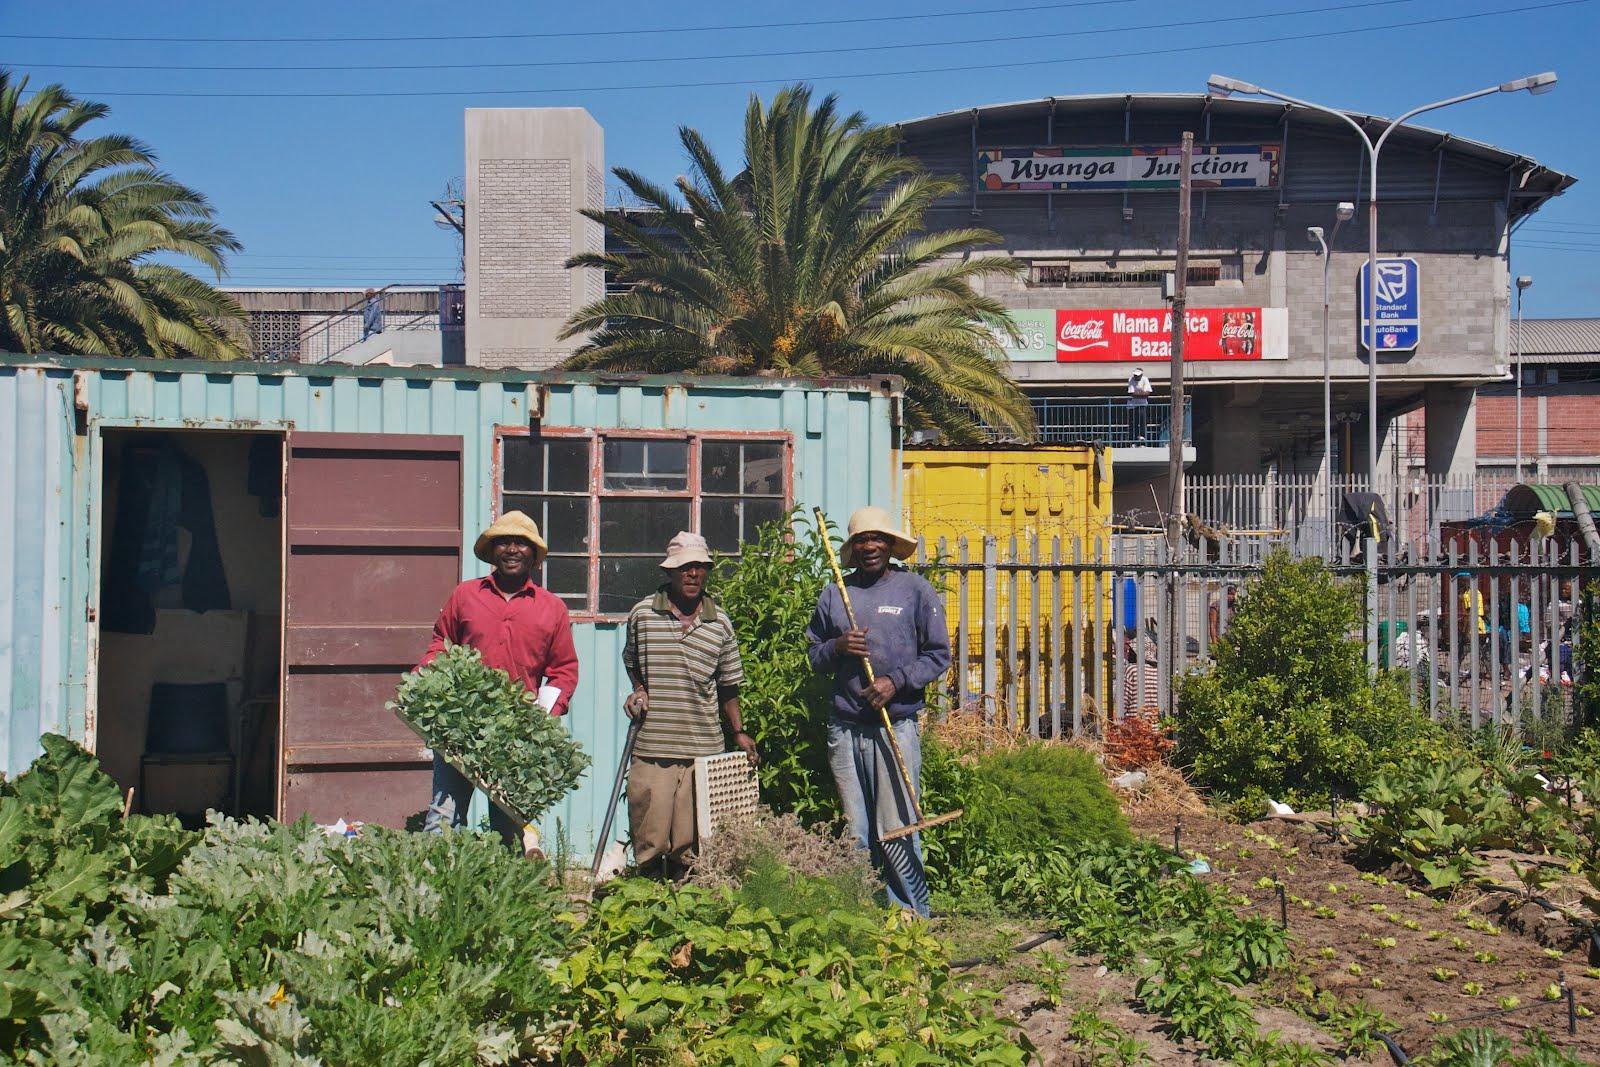 Farmers from Abalimi Bezekhaya, an urban farming initiative in Cape Town. Credit: Ellen Zachos.